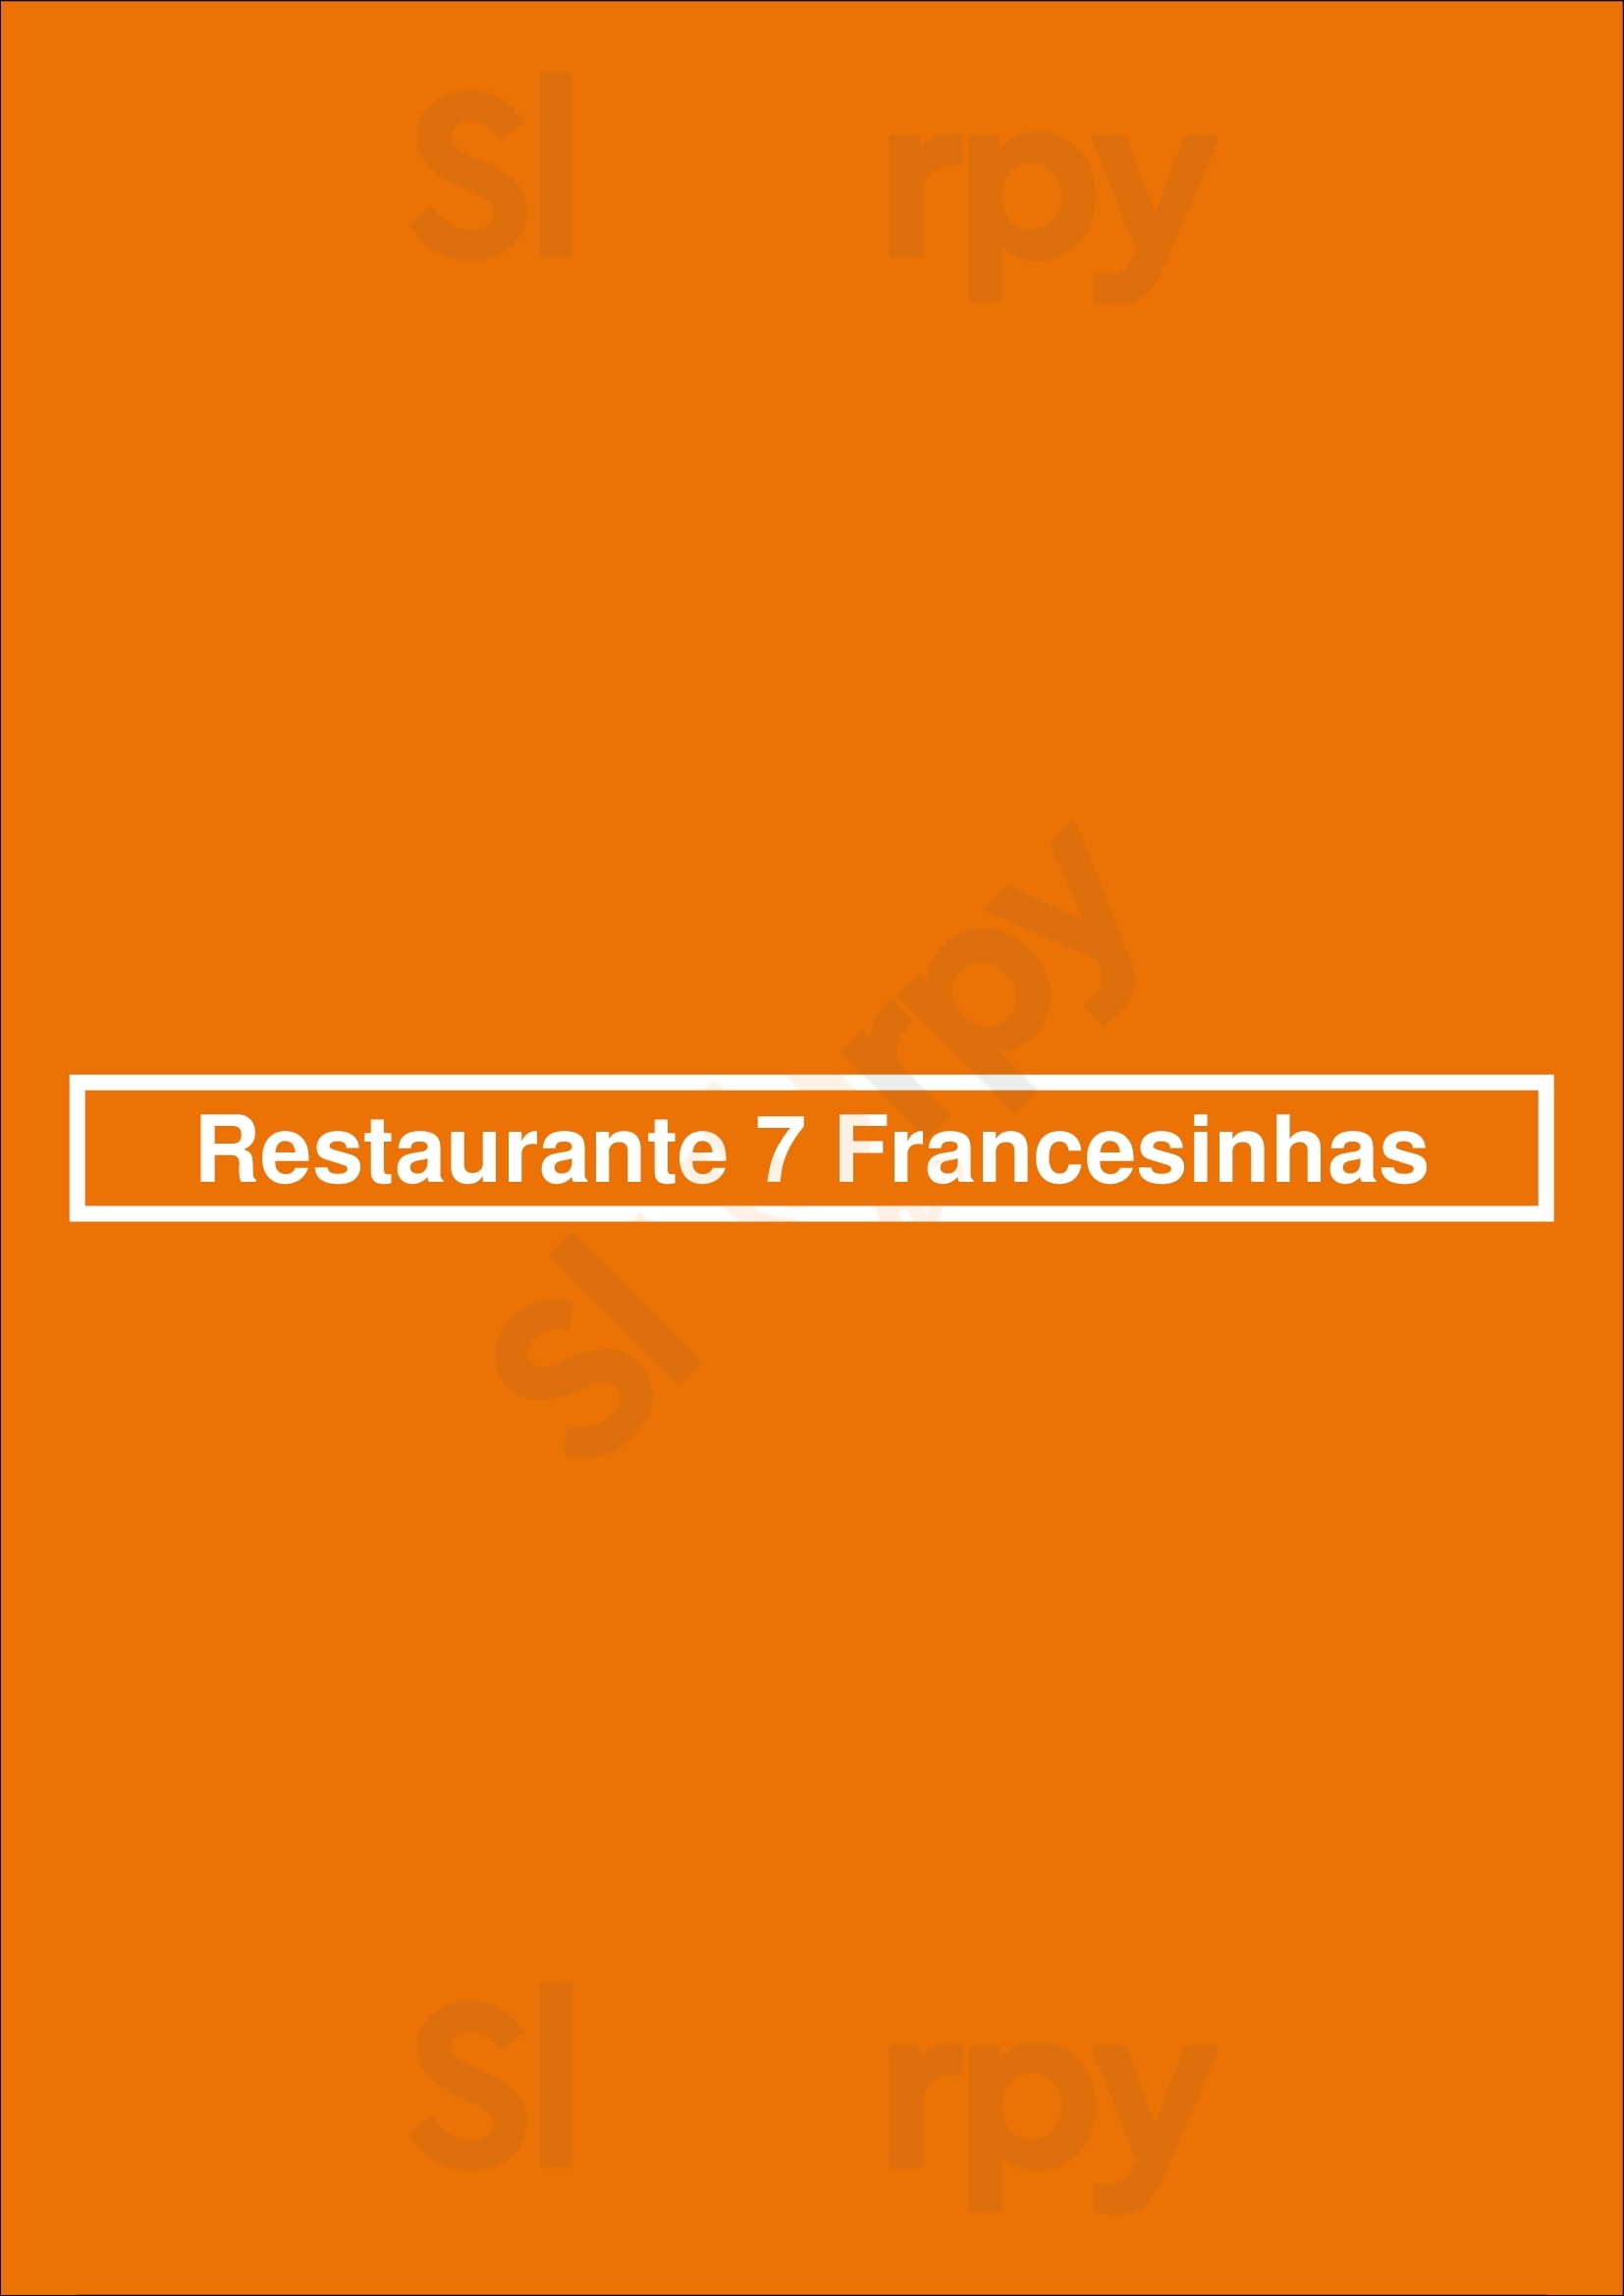 Restaurante 7 Francesinhas Porto Menu - 1